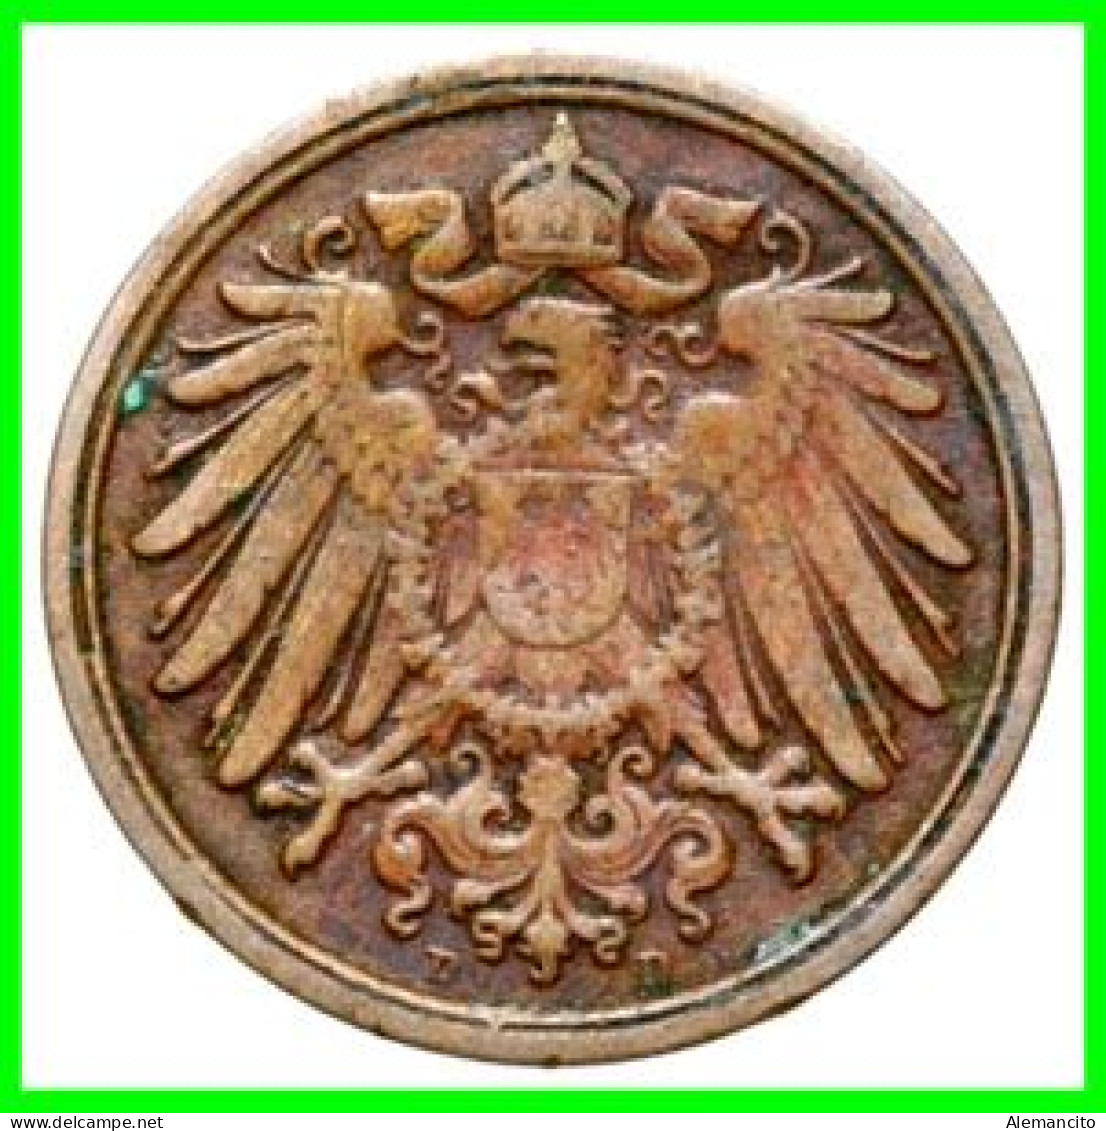 ALEMANIA – GERMANY - IMPERIO 5 MONEDAS DE SERIE COBRE DIAMETRO 17.5 Mm. DEL AÑO 1905 – KM-10   WILHELM II - 1 Pfennig